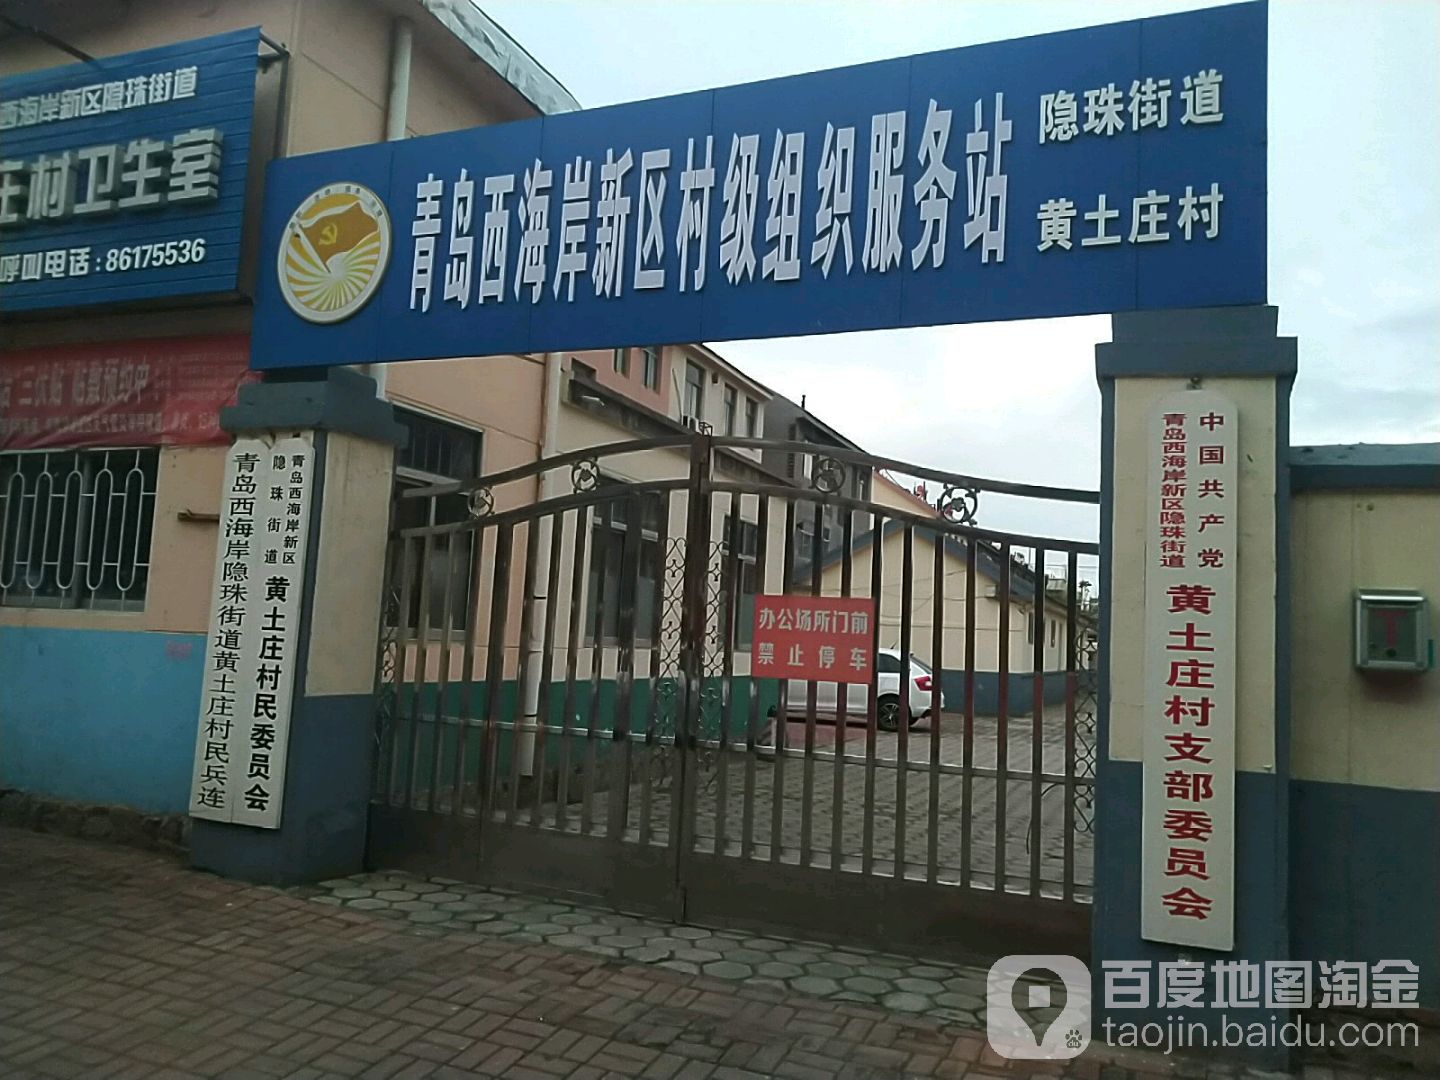 中国共产党青岛西海岸新区隐珠街道黄土庄村支部委员会